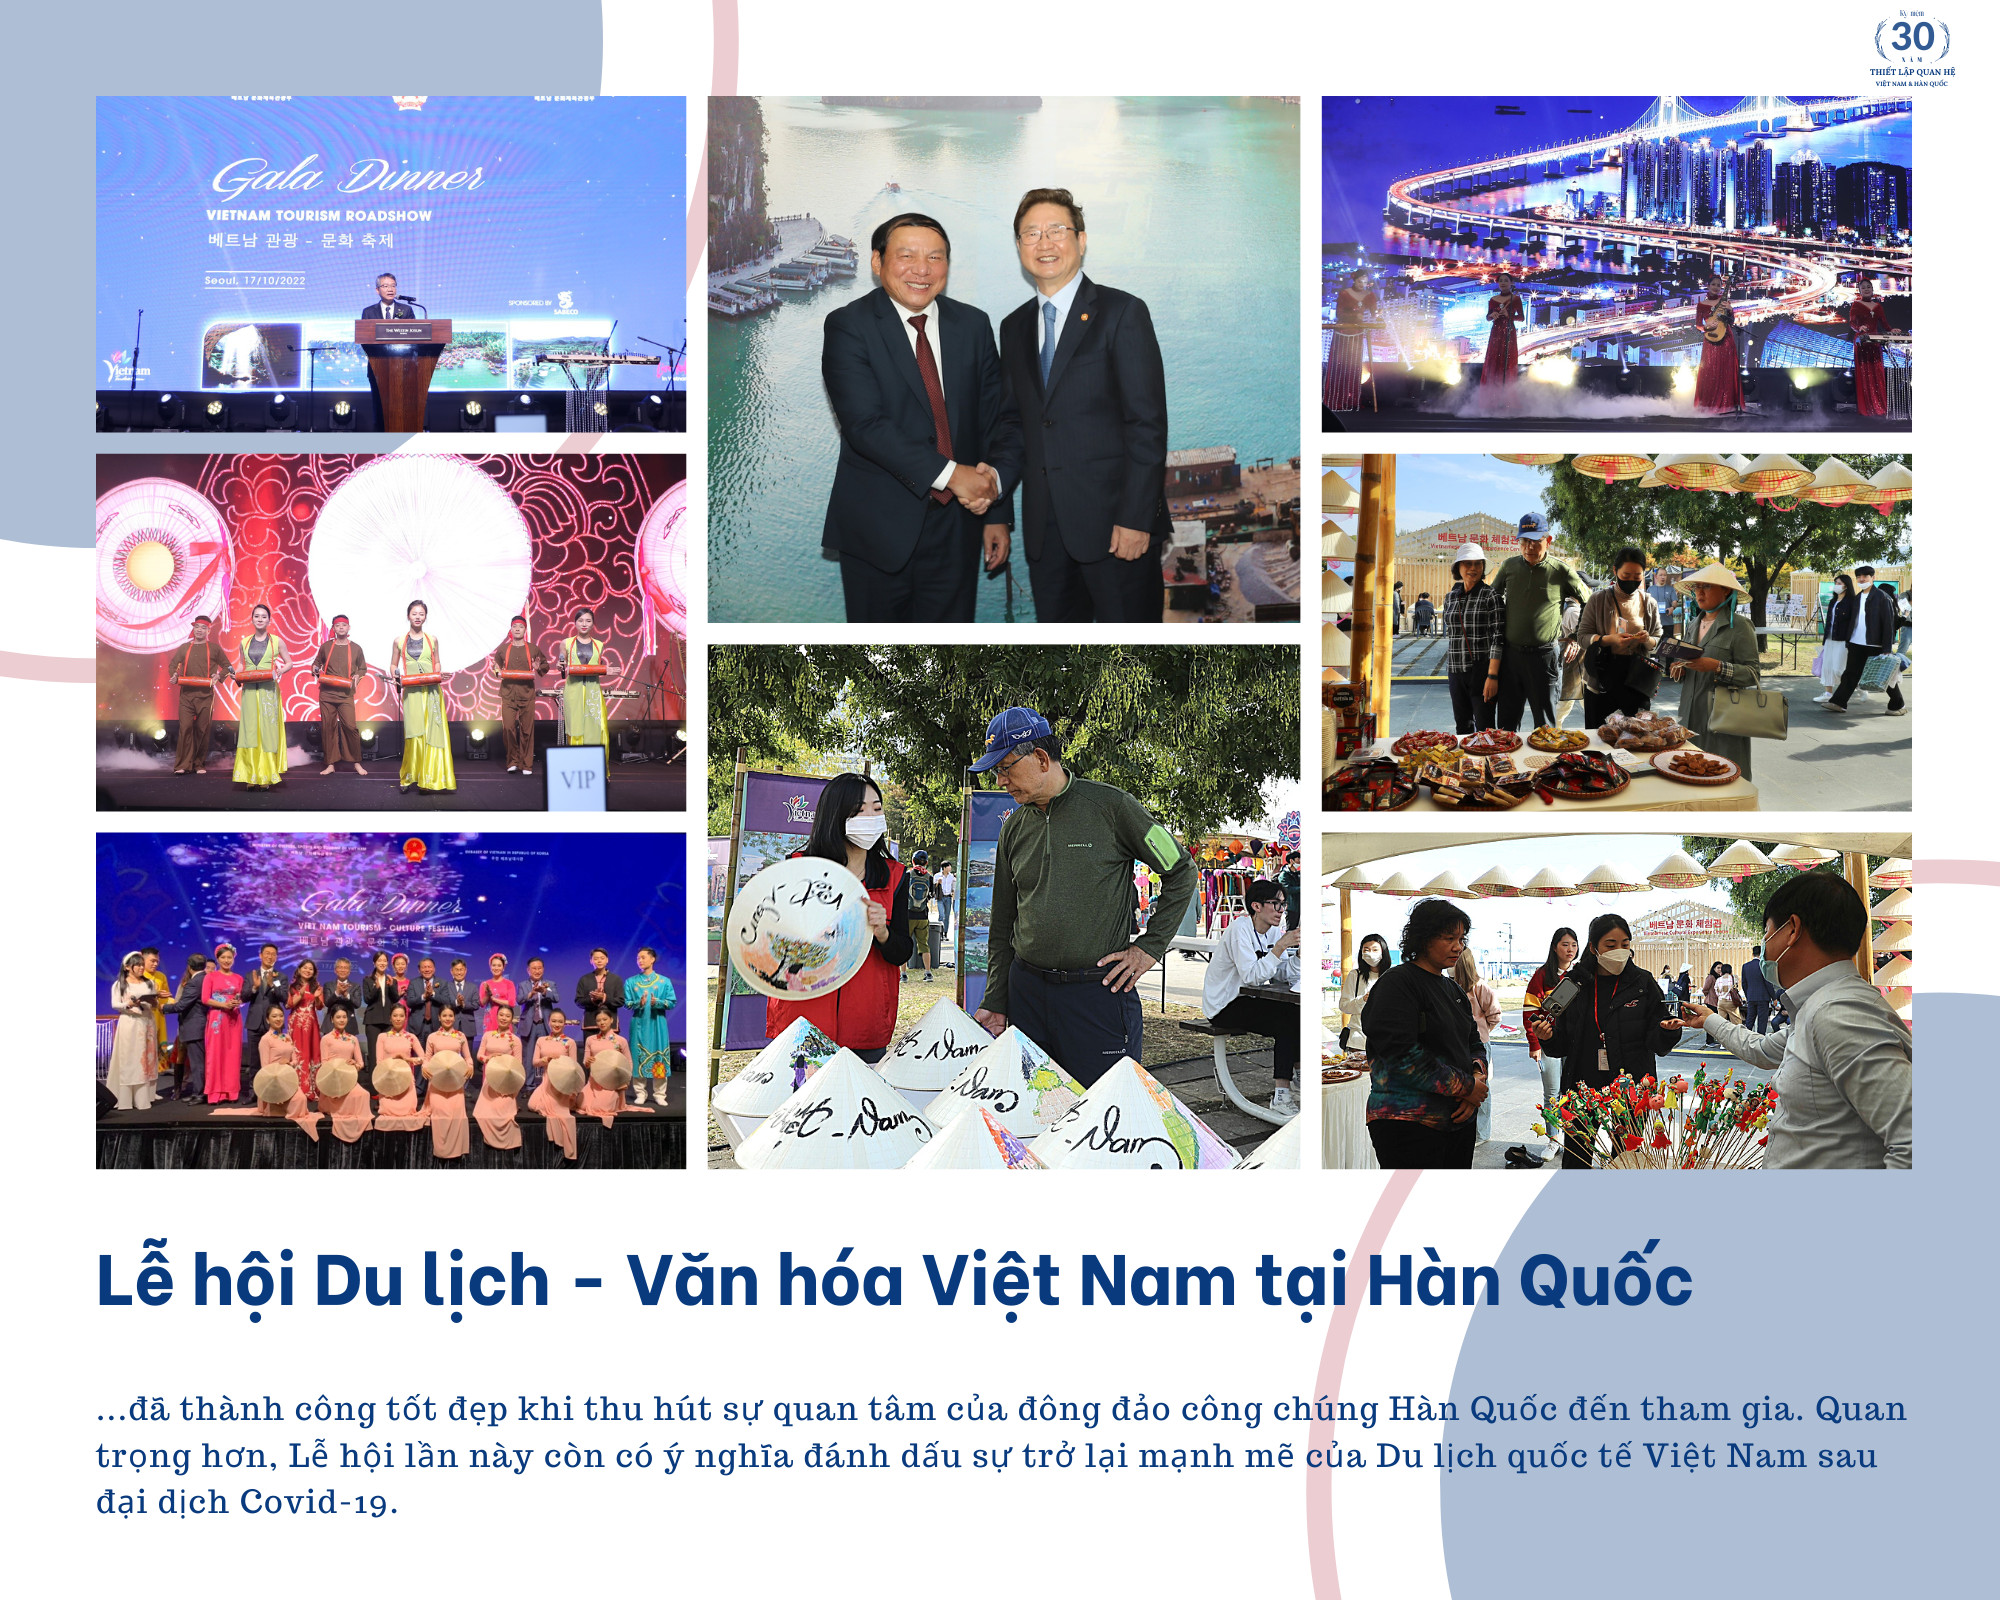 Hợp tác Văn hóa - Thể thao - Du lịch giữa Việt Nam - Hàn Quốc: Cùng nhau nhanh hơn, cao hơn, xa hơn